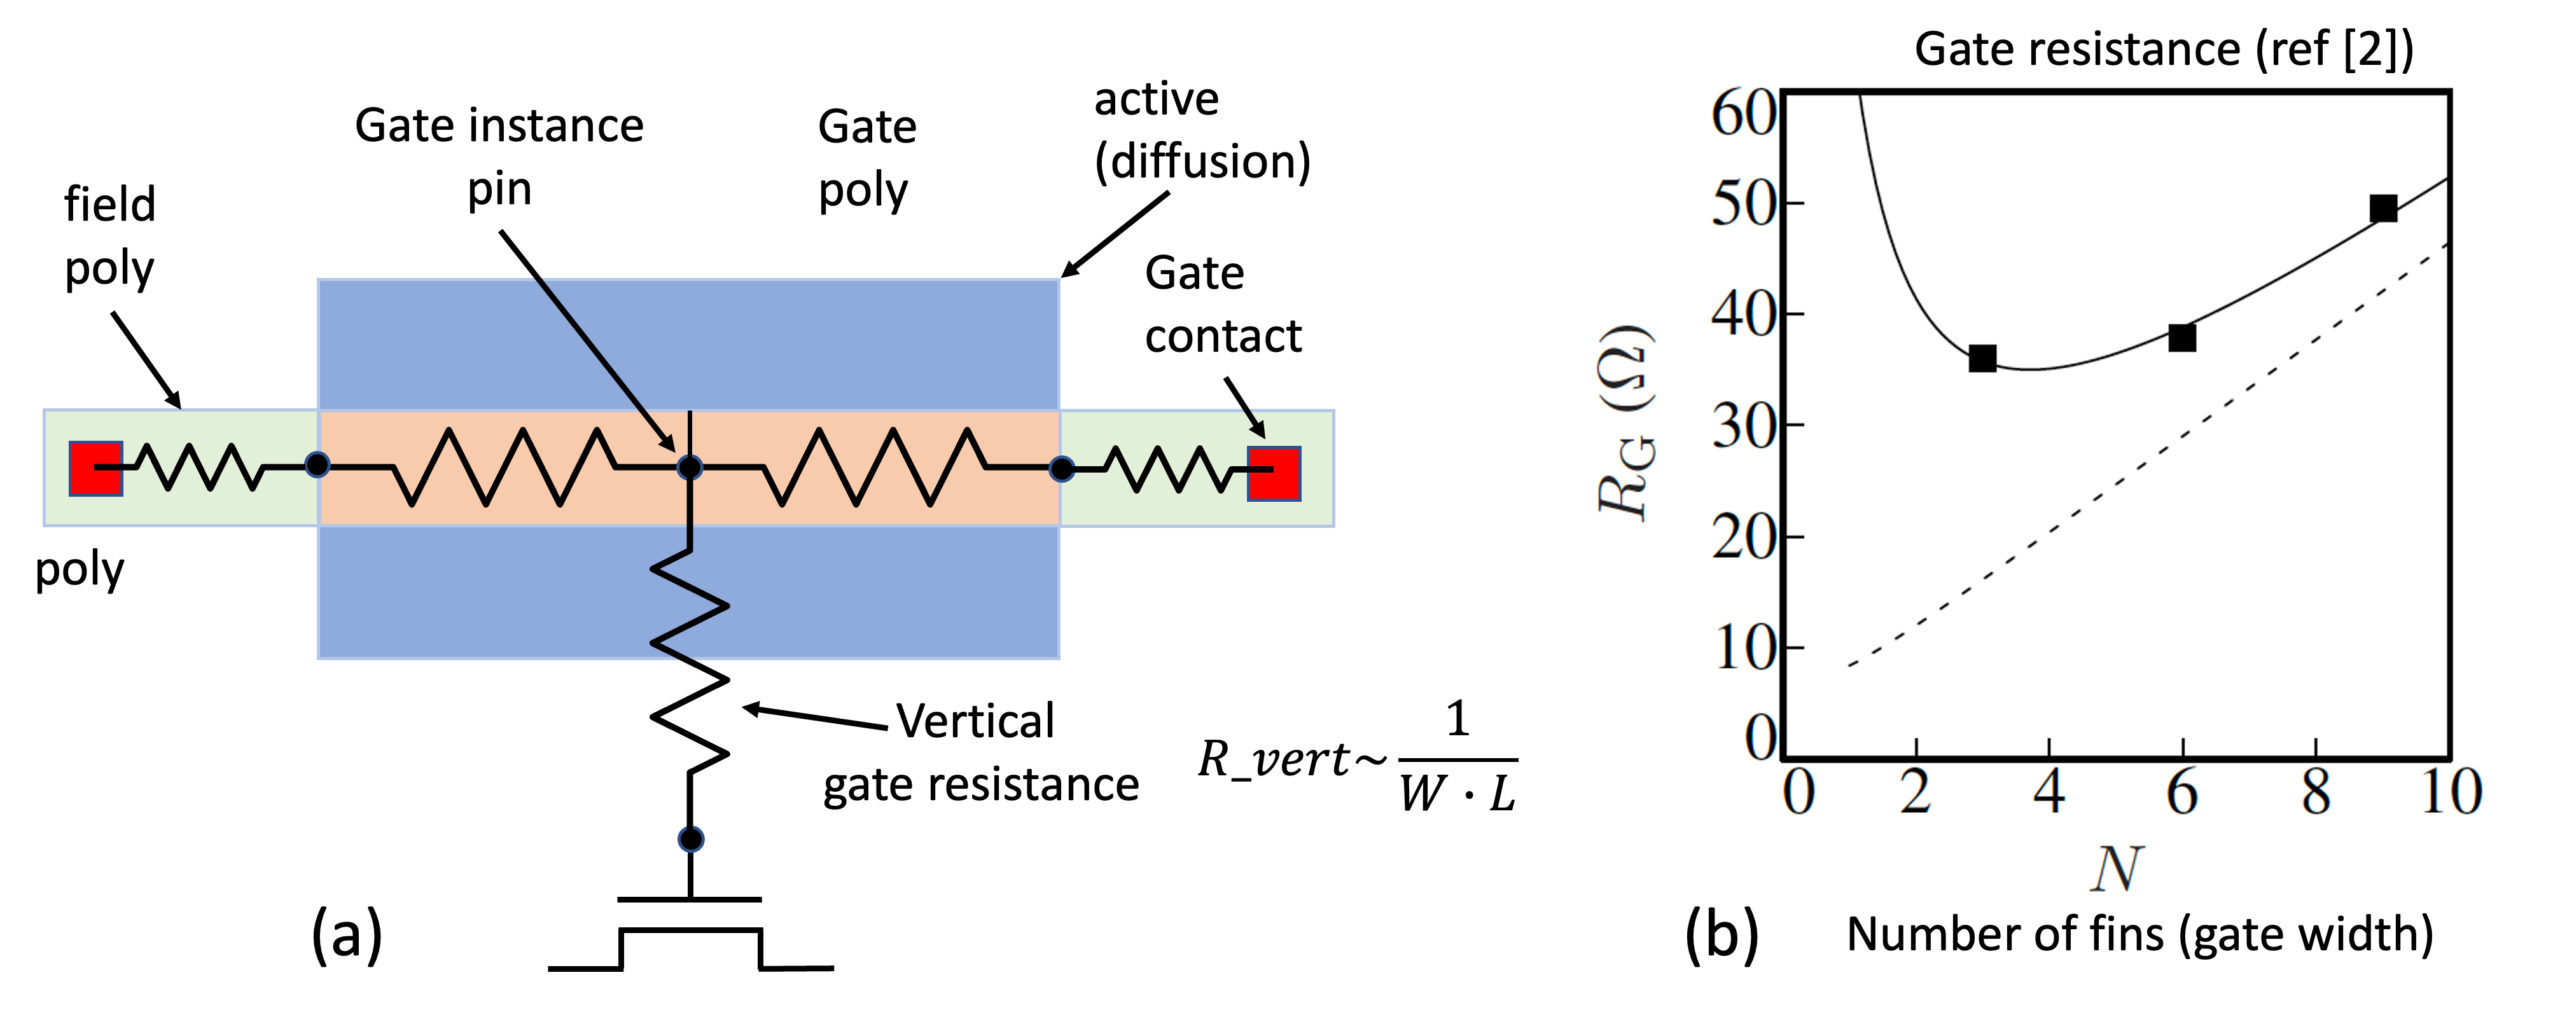 (a) Gate-Modell, das den vertikalen Gate-Widerstand berücksichtigt, und (b) gemessener und simulierter Gate-Widerstand gegenüber der Anzahl der Finnen (Ref. [2]).